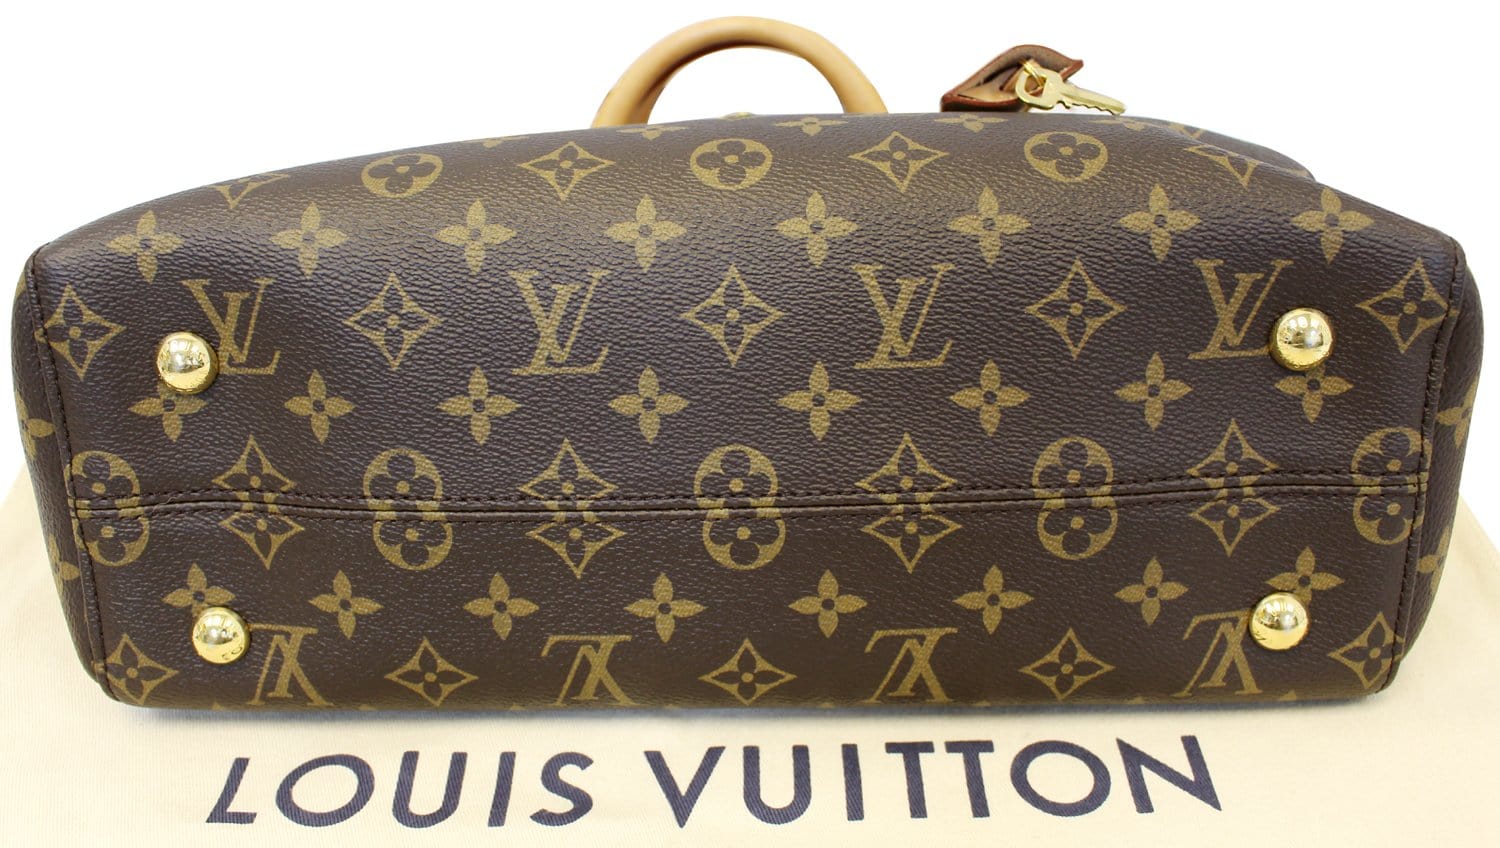 Louis Vuitton Venus Monogram Canvas Handtasche - MyLovelyBoutique